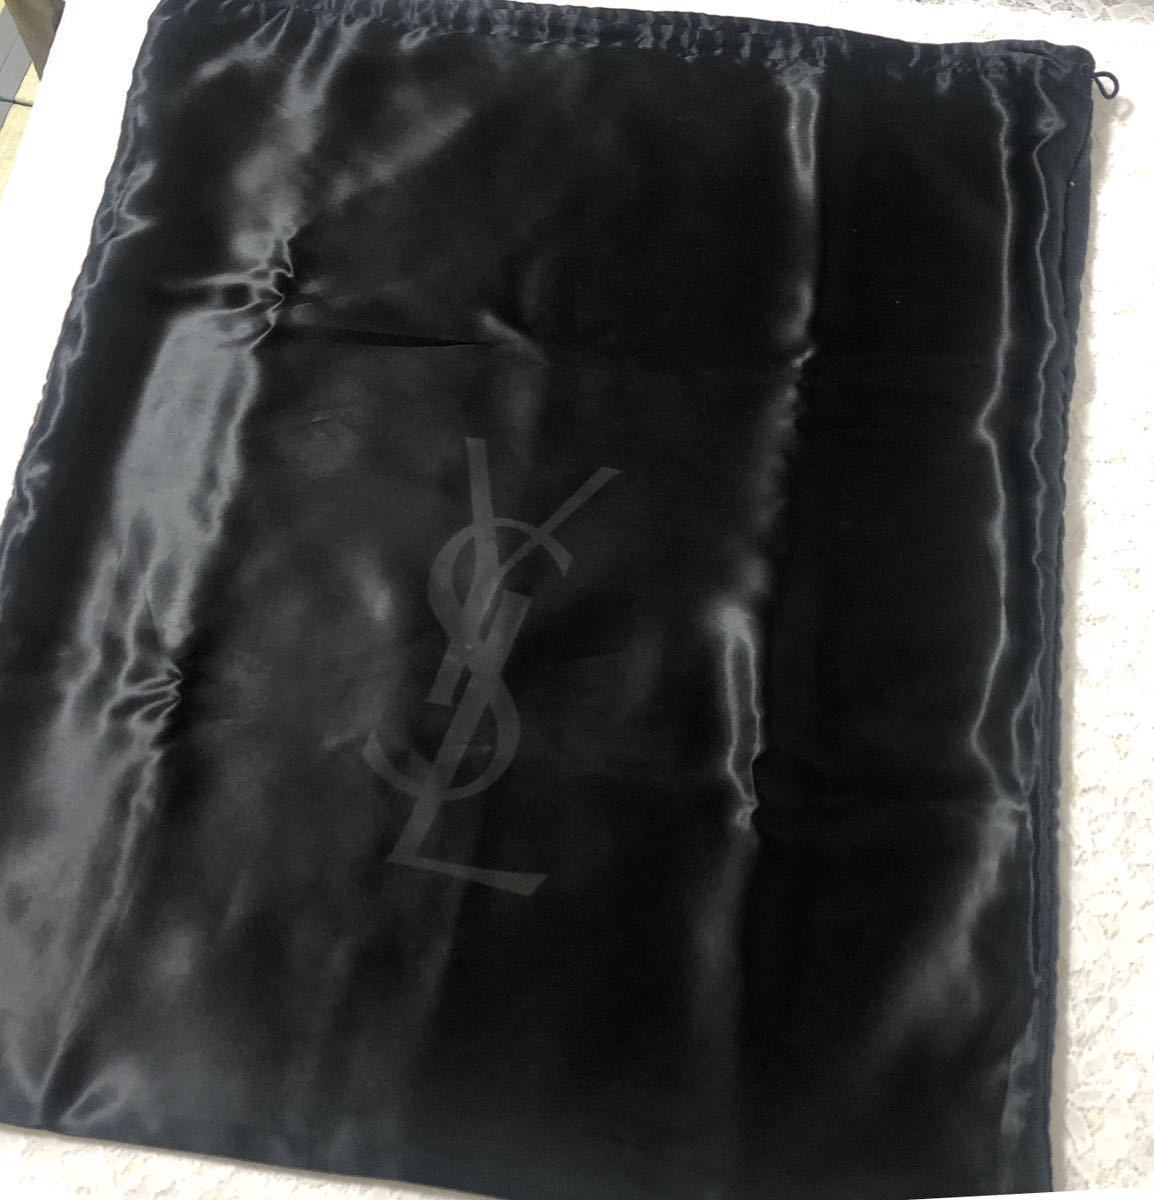 イヴサンローラン「YVE SAINT LAURENT」バッグ保存袋 旧型 (2786) 正規品 付属品 布袋 巾着袋 ブラック 二重仕立て ナイロン生地 わけあり_画像3